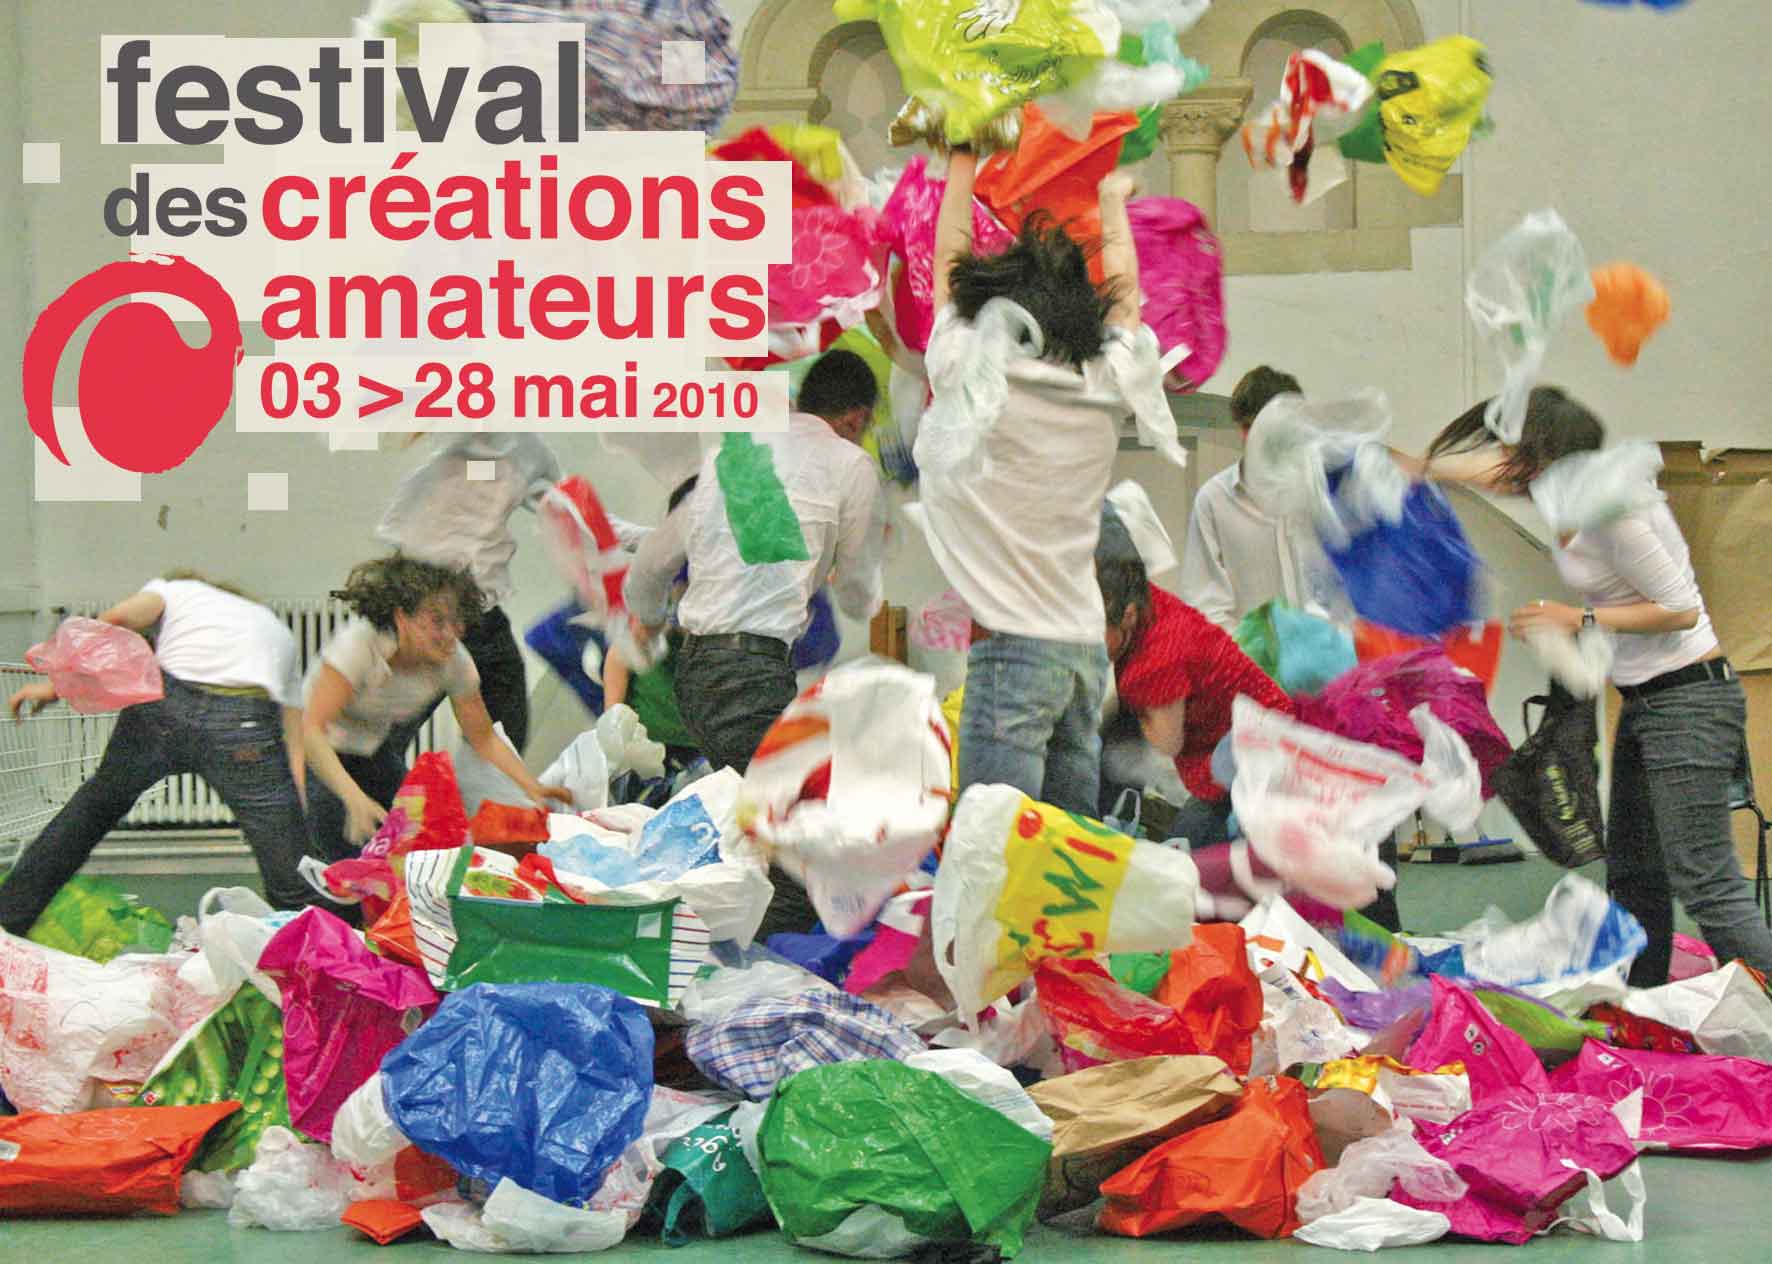 Festival des créations amateurs 2010